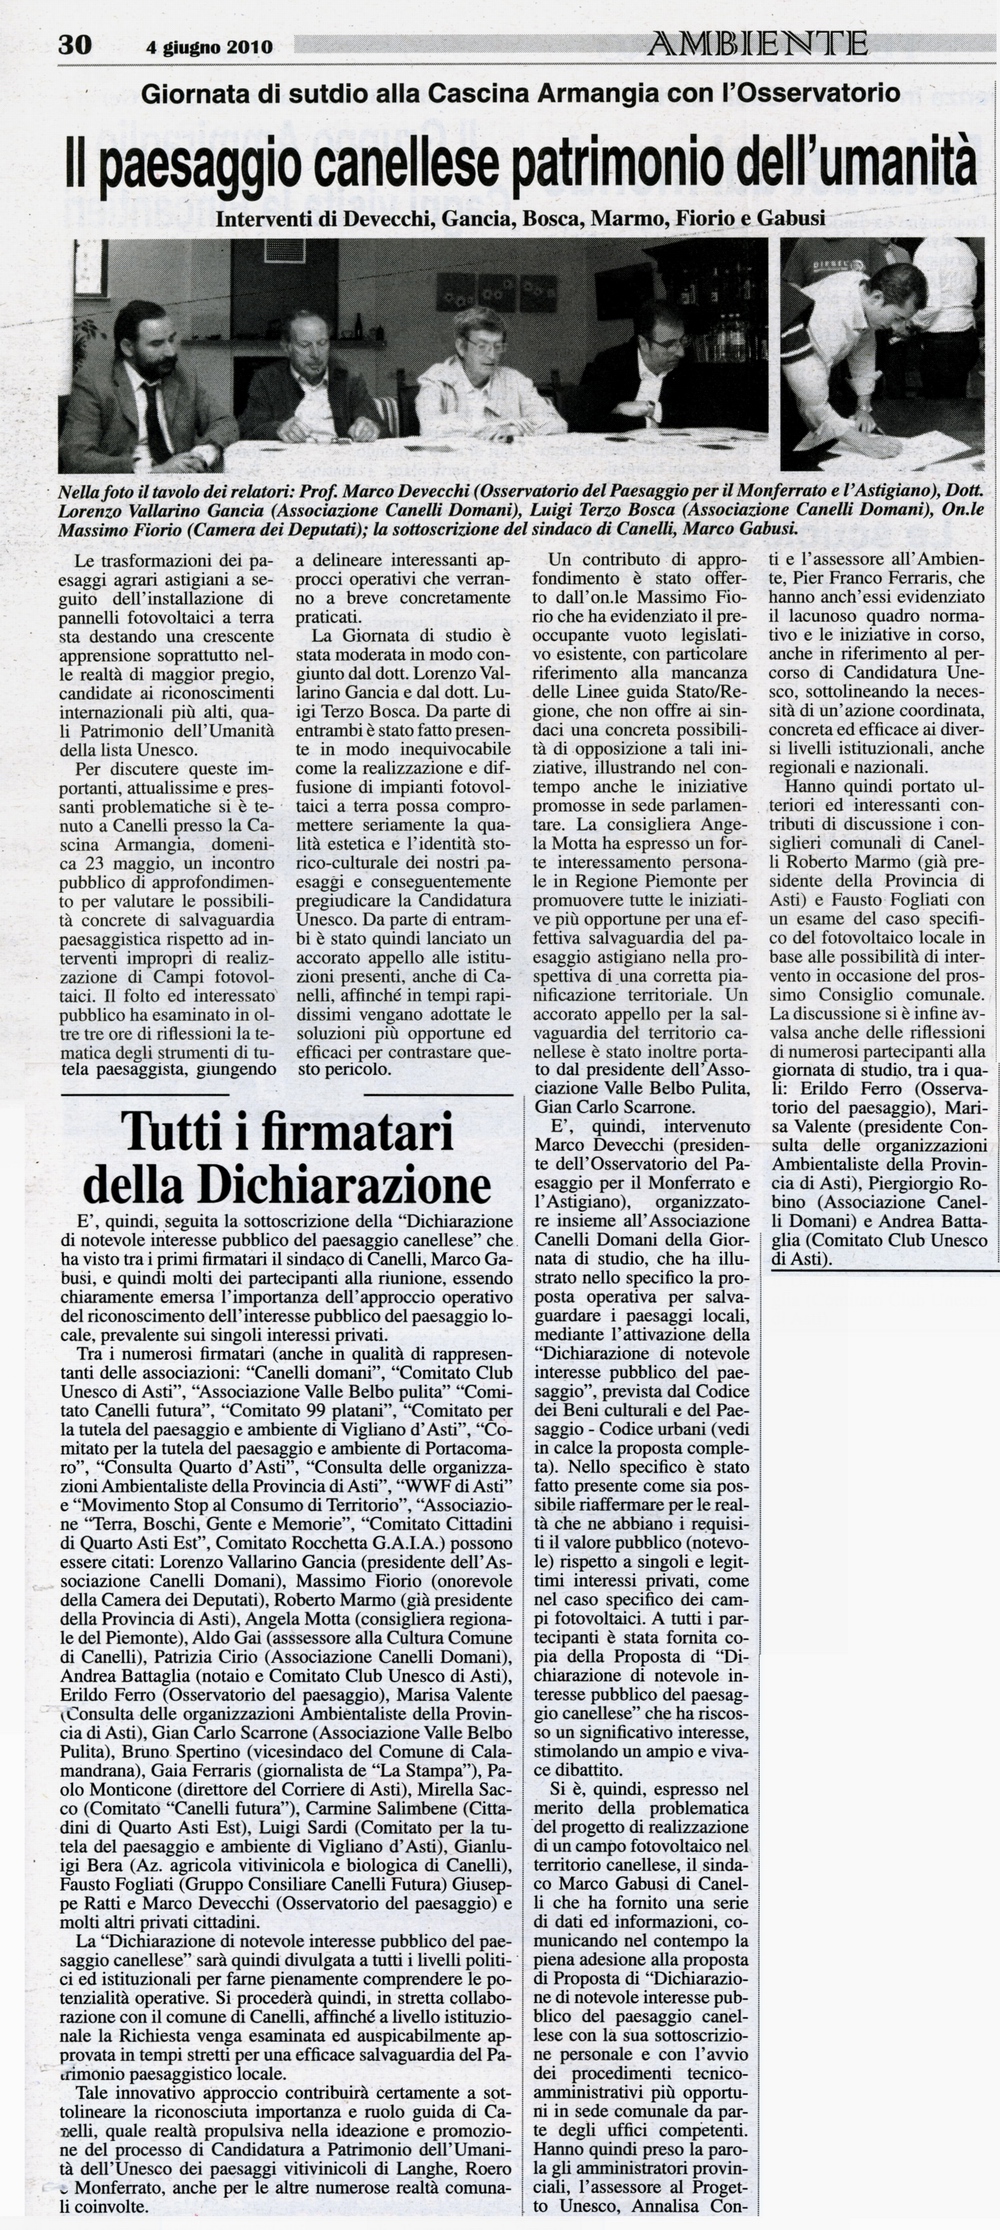 Rassegna stampa della Dichiarazione di notevole interesse pubblico del paesaggio di Canelli - Gazzetta d'Asti (venerdì 4 giugno 2010)